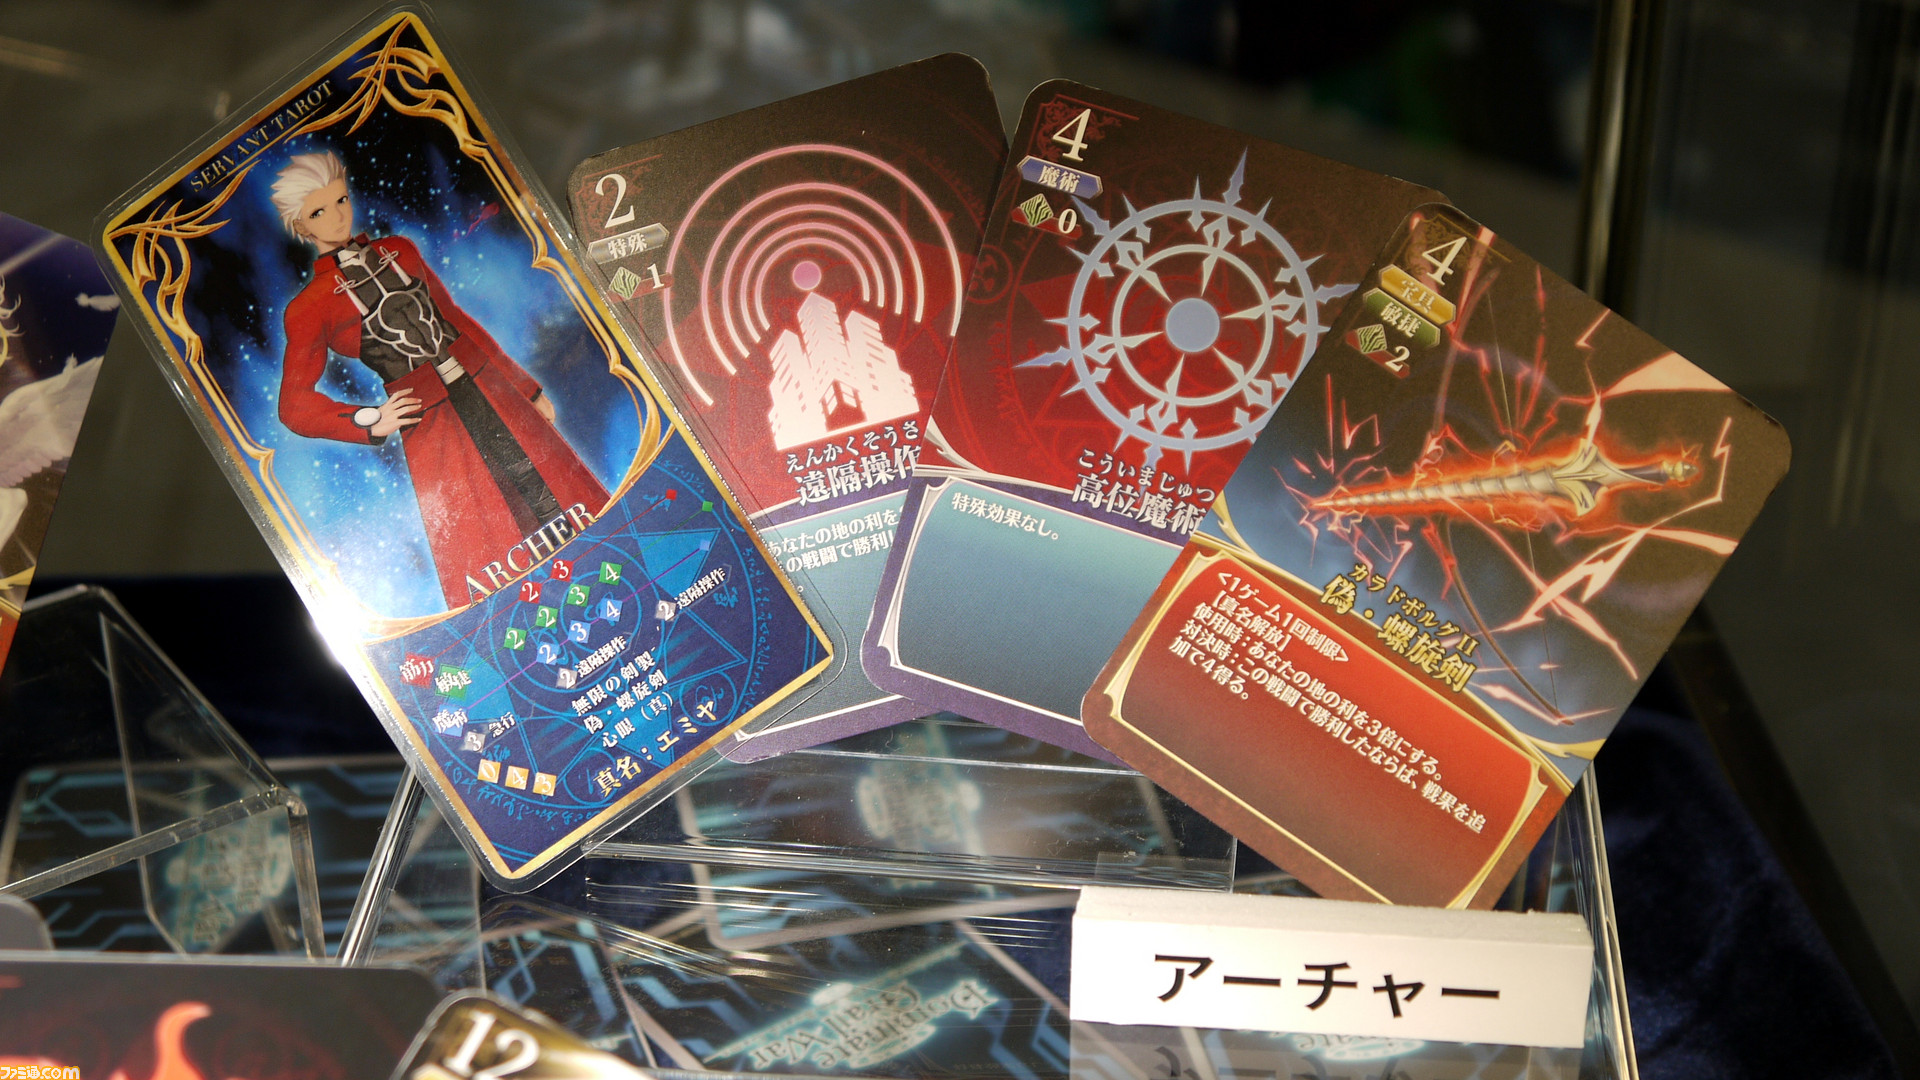 Fate Dgw 無限の剣製は最強カードの一角に 間桐慎二の特殊性など新